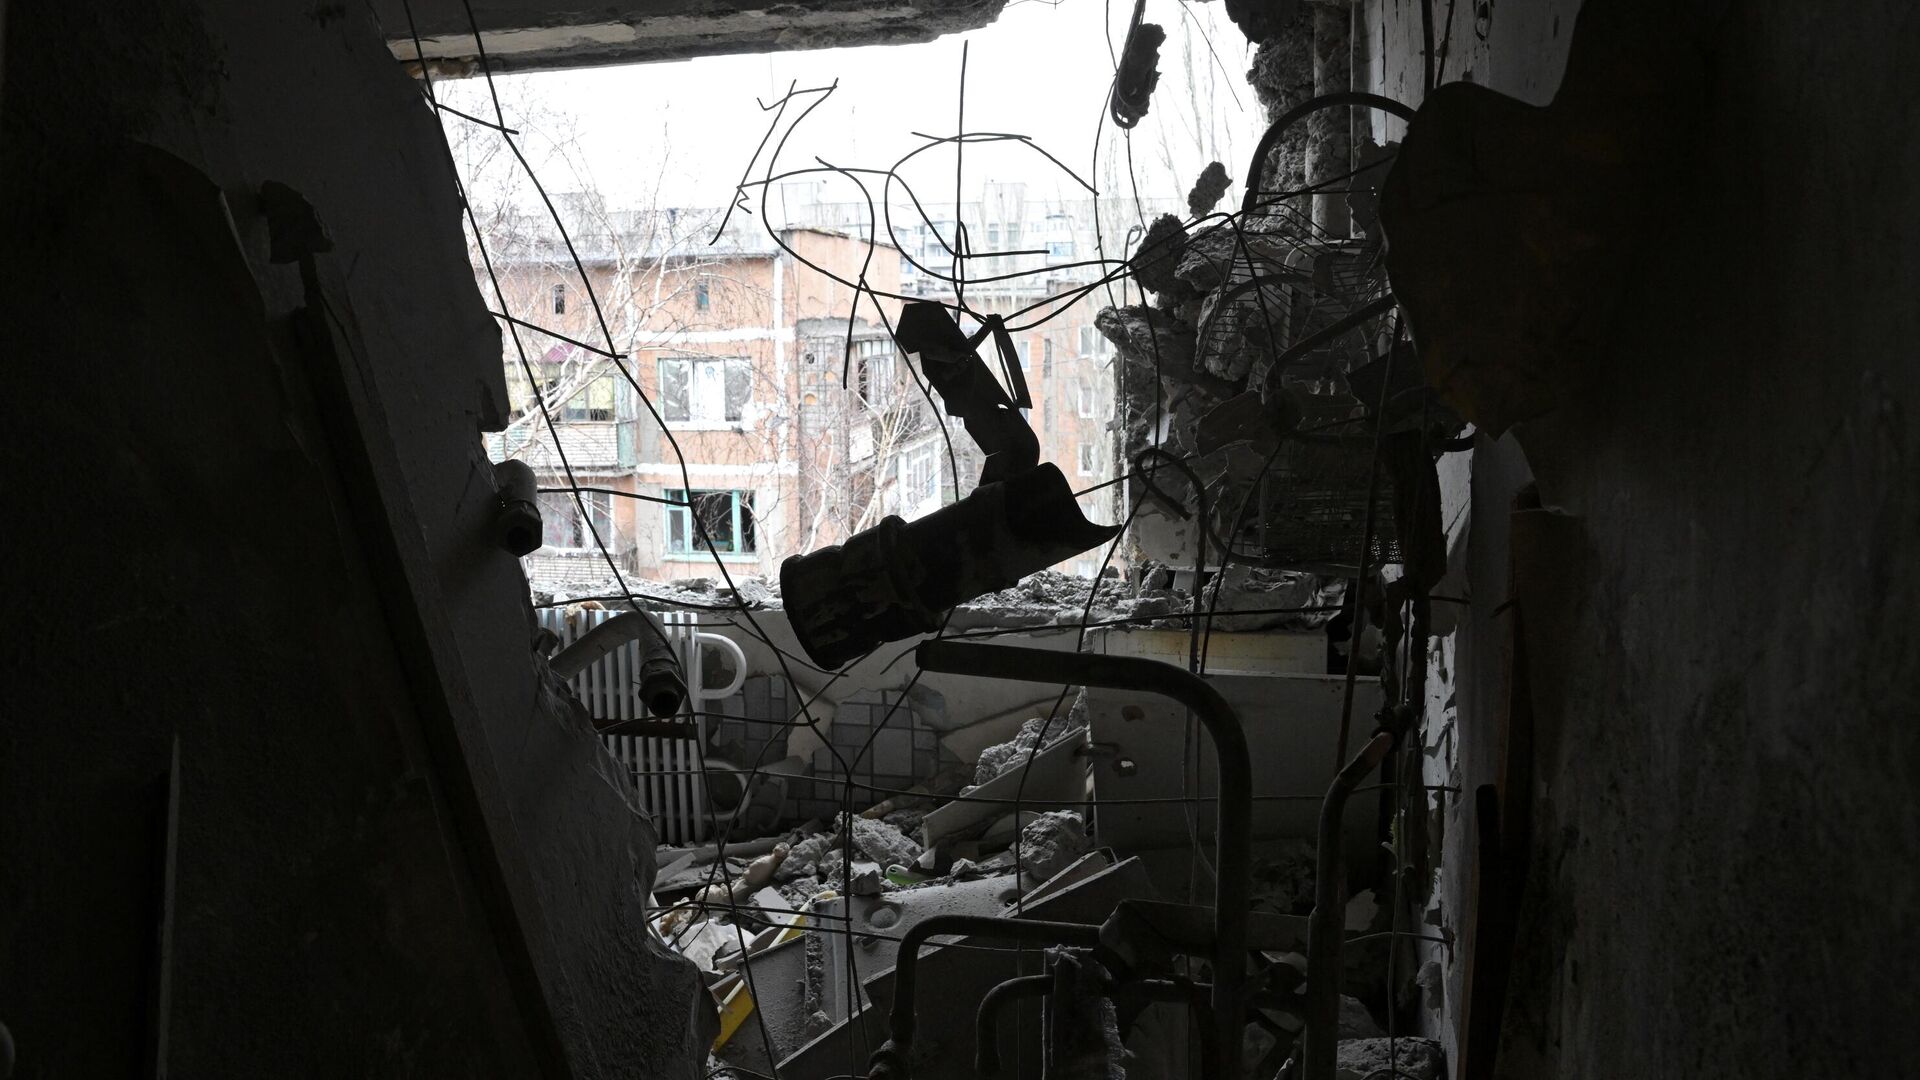 Квартира, пострадавшая в результате прямого попадания снаряда в жилой дом в Горловке - РИА Новости, 1920, 05.04.2022